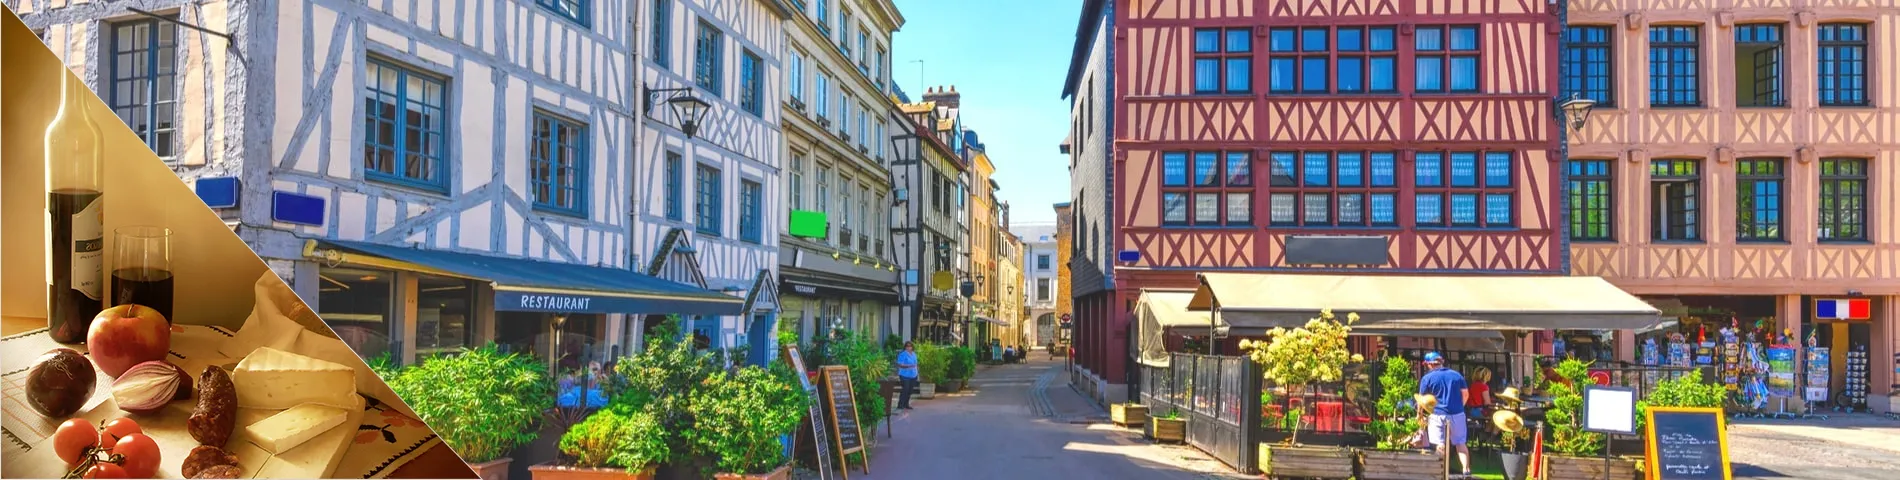 Rouen - Französisch & Kultur